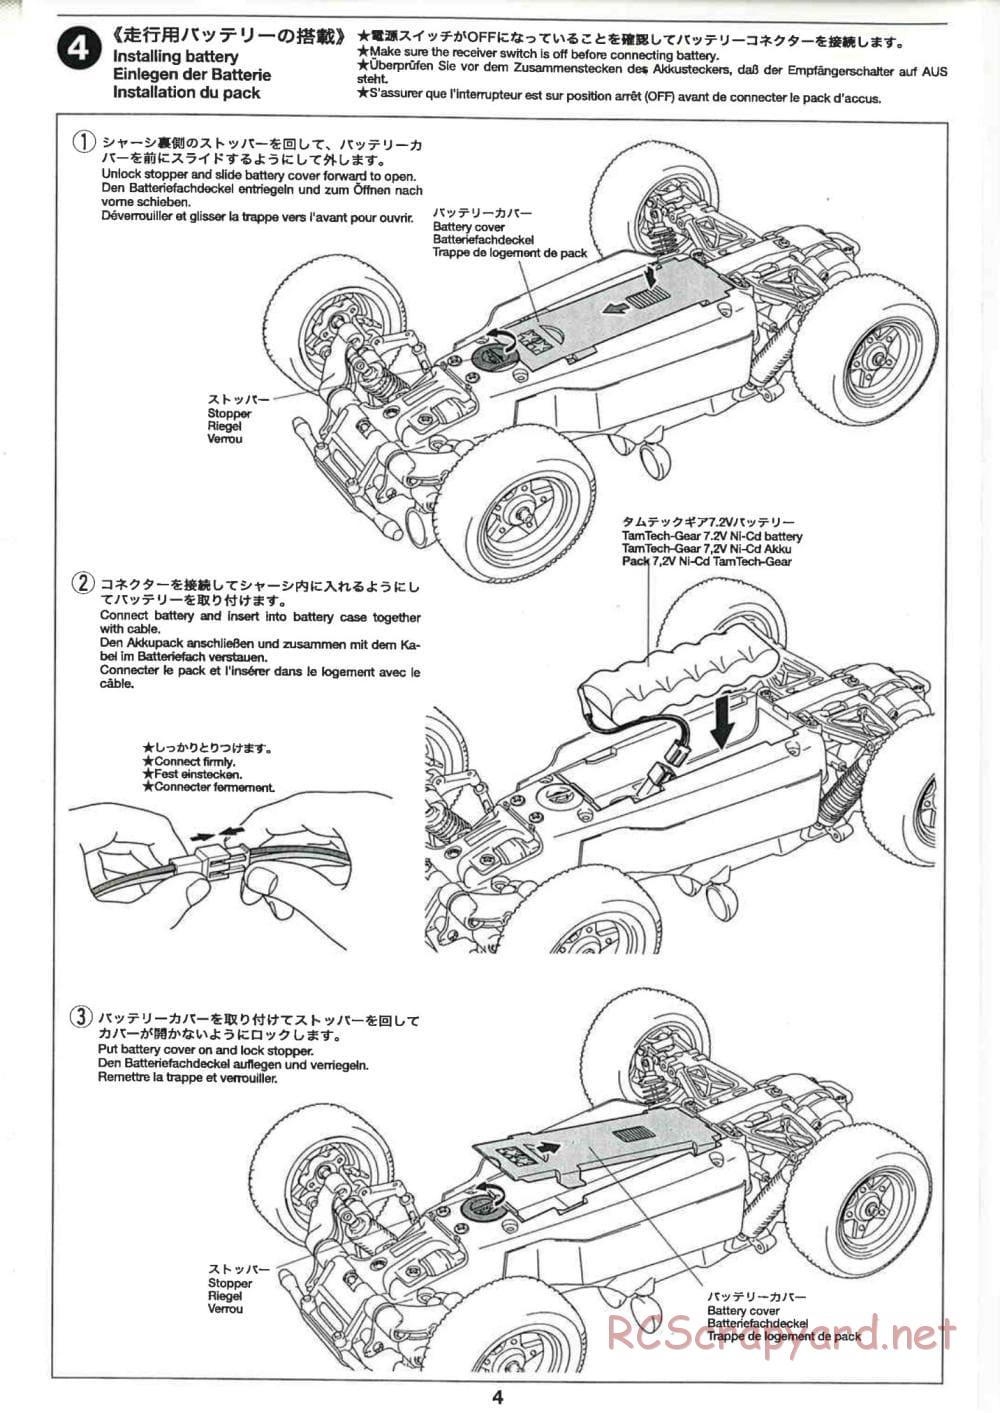 Tamiya - GB-02 Chassis - Manual - Page 4